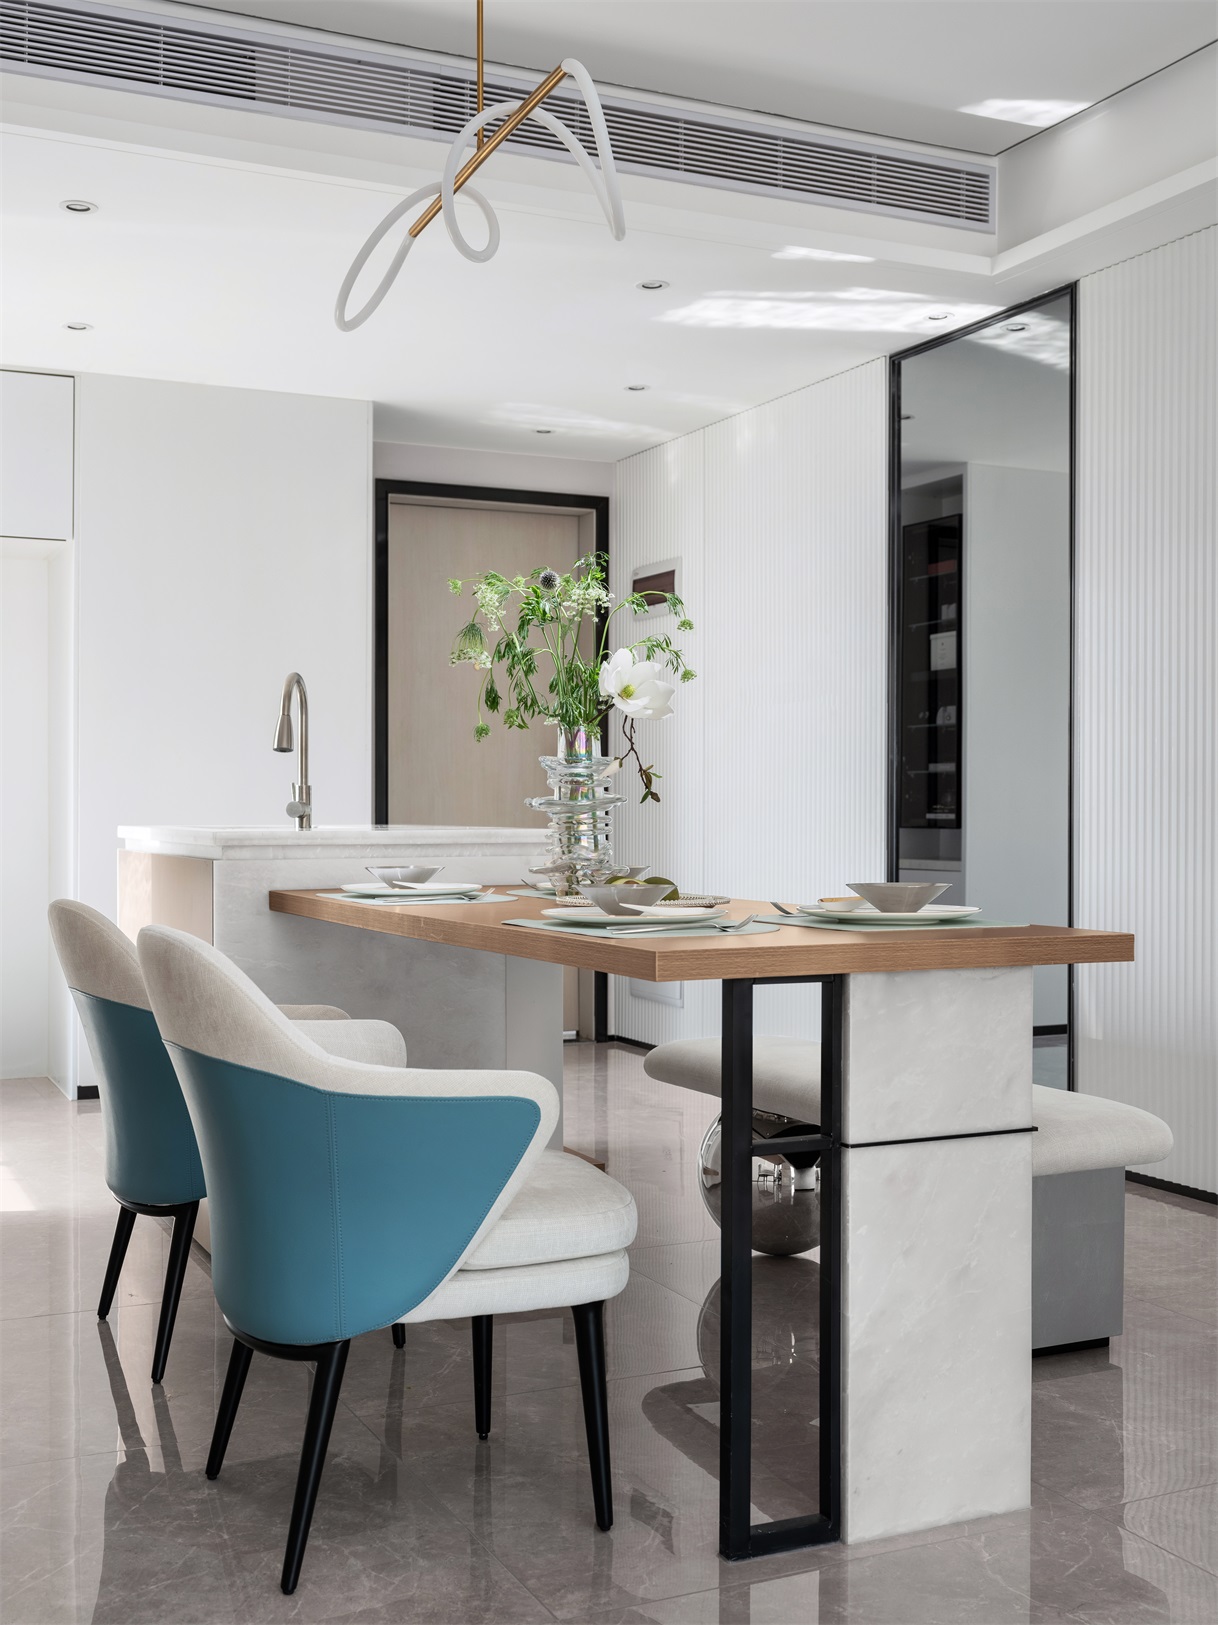 白色的餐厅空间中，墙壁与餐桌椅相互呼应，整体空间有简约典雅的感觉。